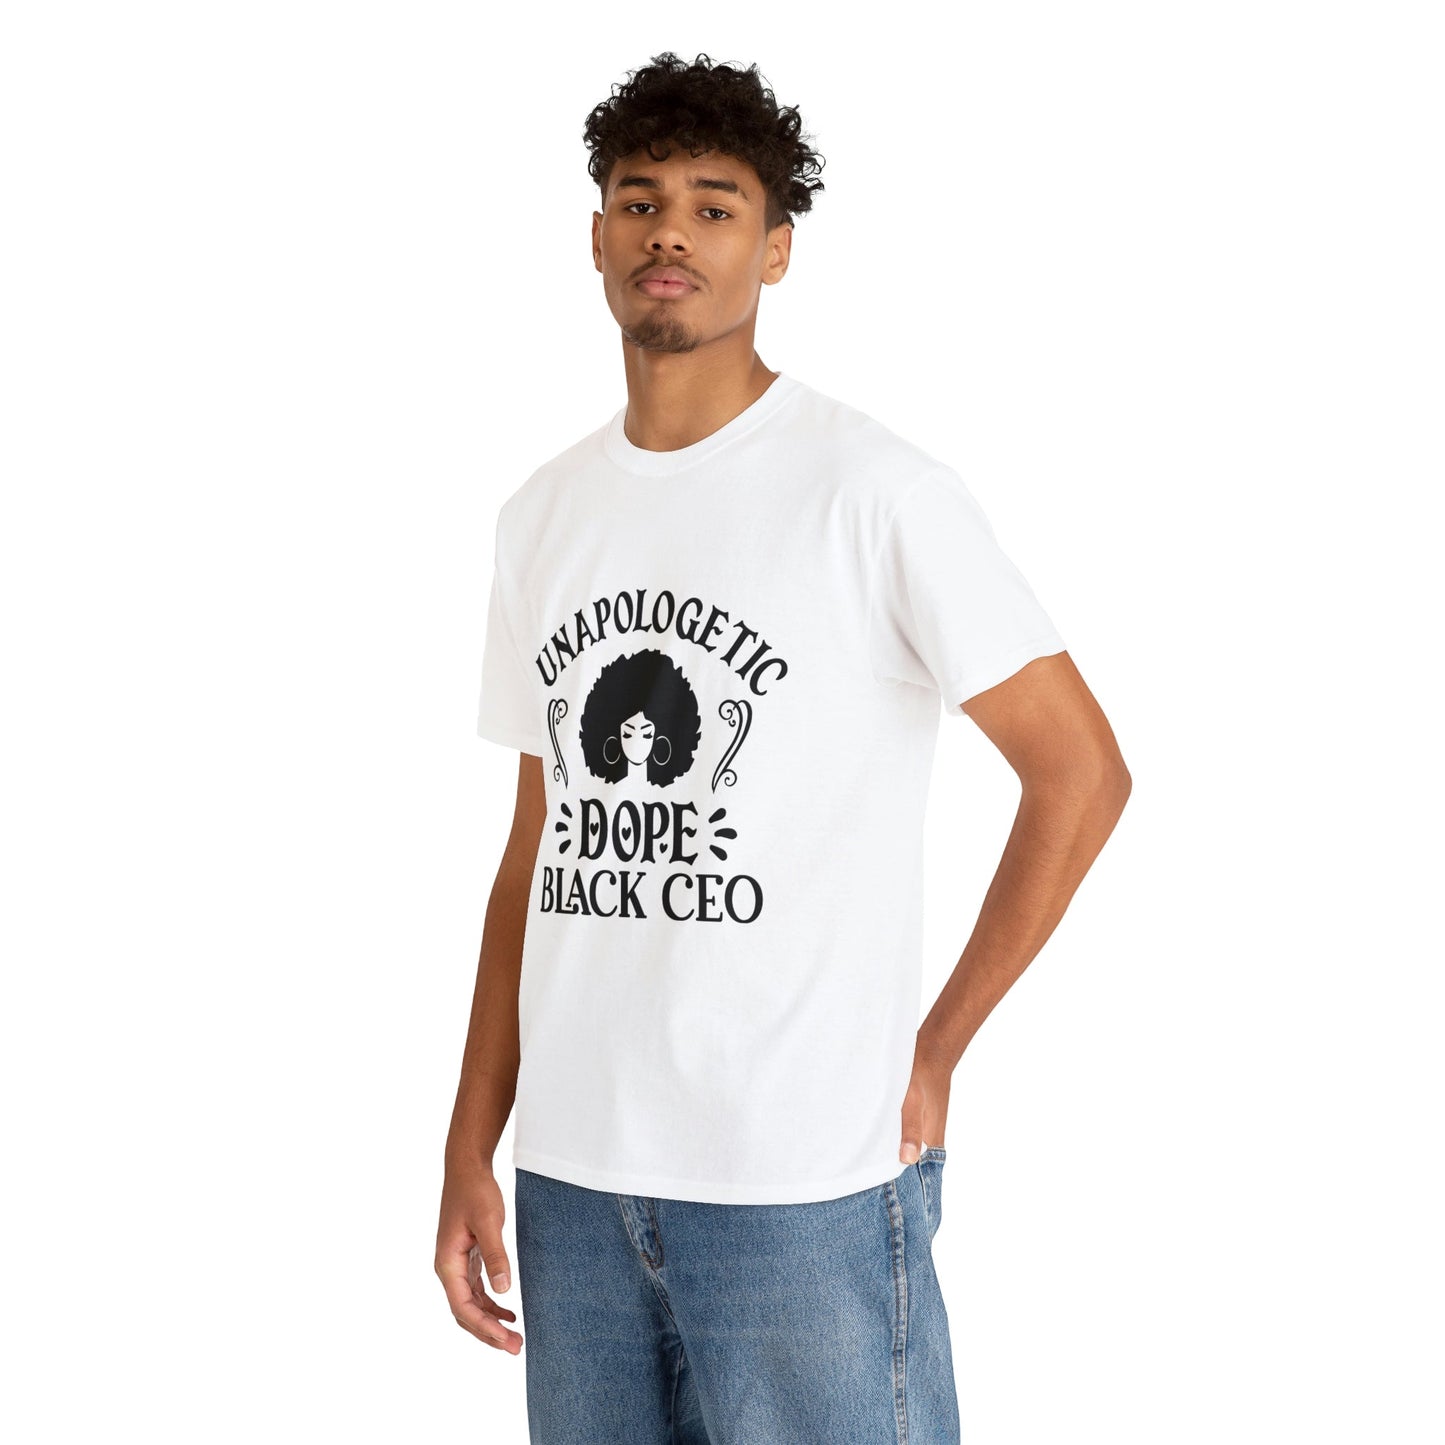 T4x Dope Black CEO Unisex Heavy Cotton T-Shirt - T4x Quadruple Love